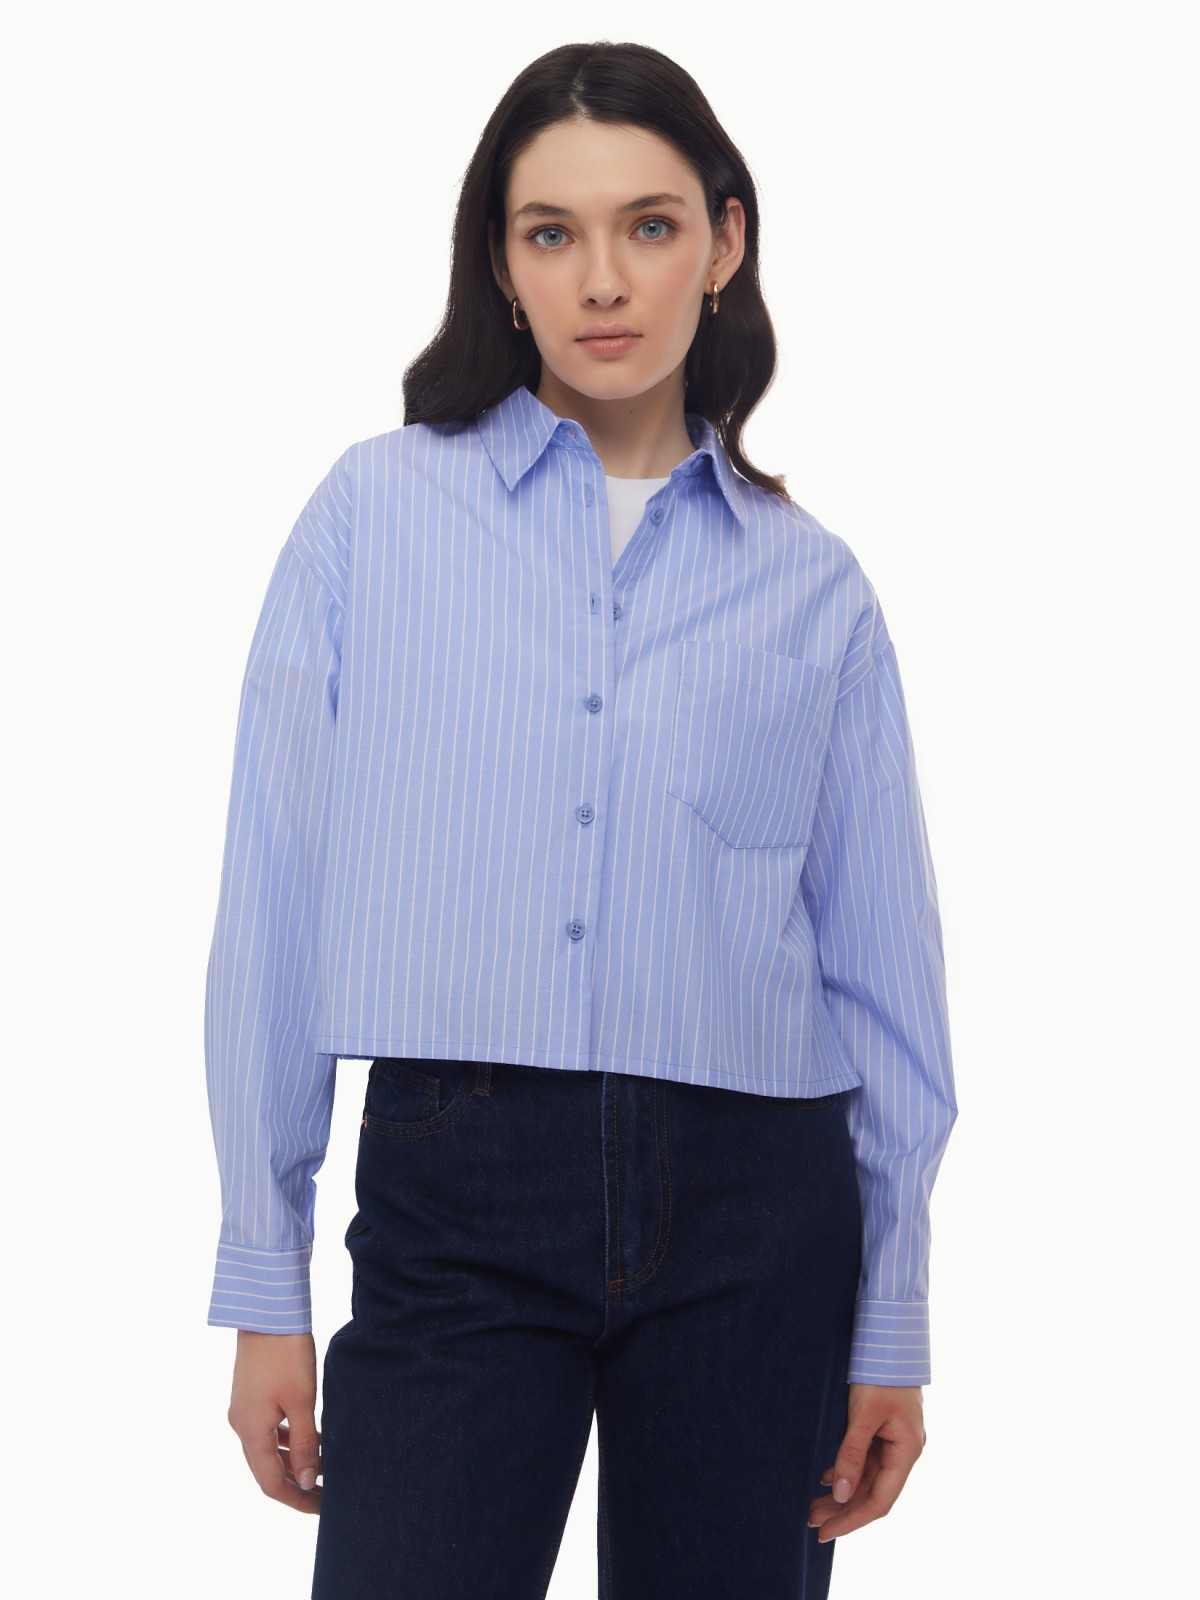 Рубашка укороченного силуэта с узором в полоску zolla 024131159163, цвет светло-голубой, размер XS